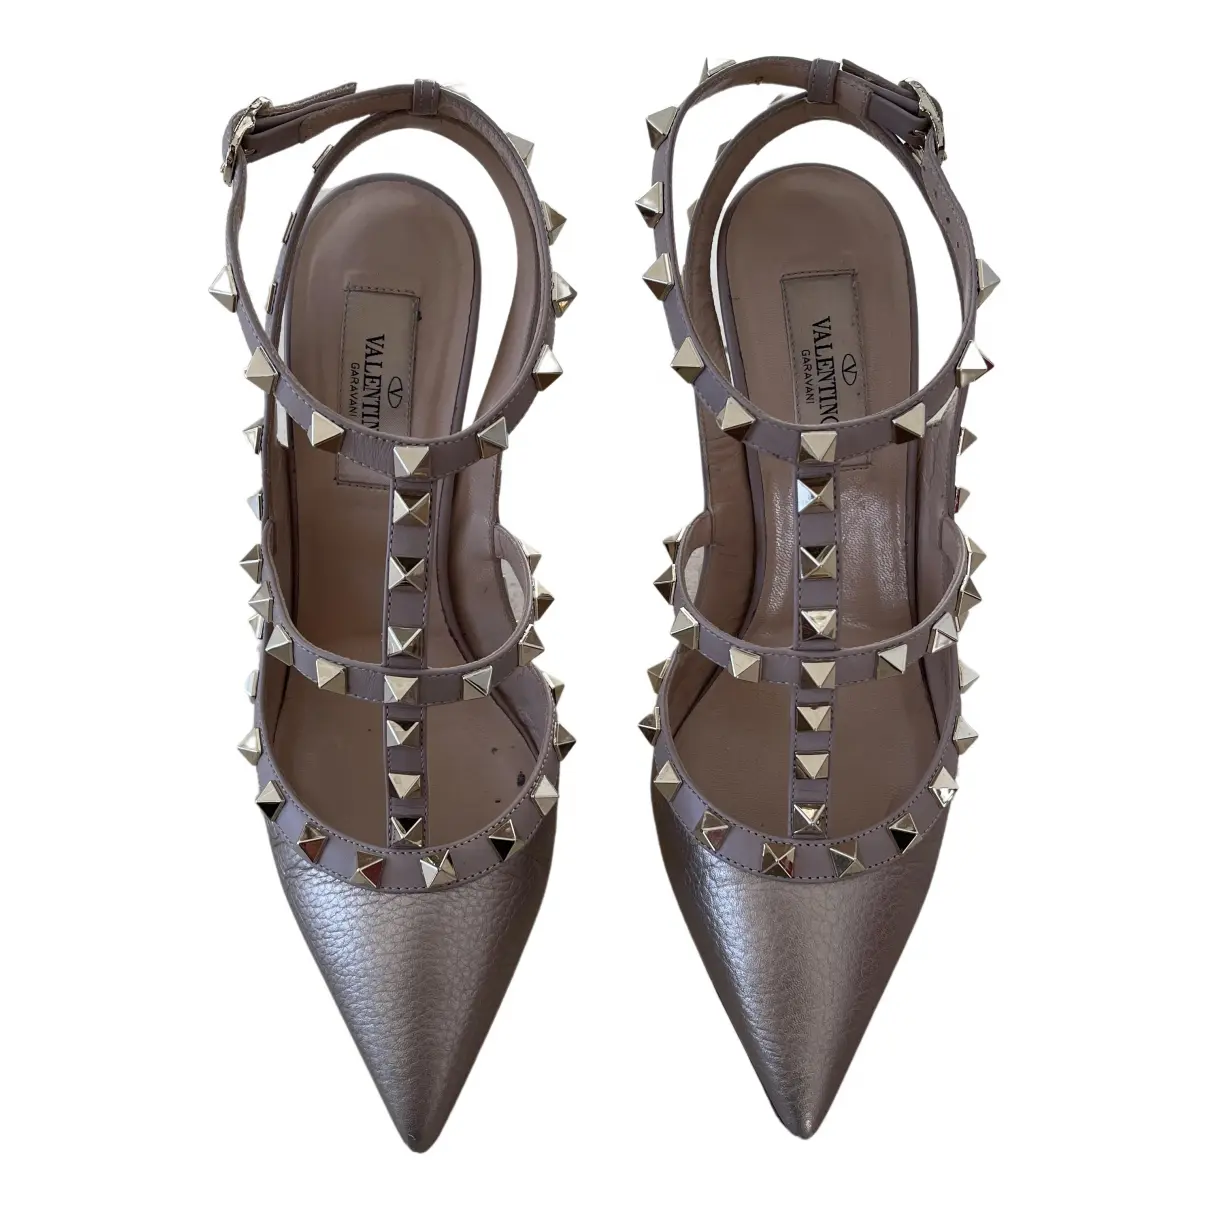 Rockstud leather heels Valentino Garavani